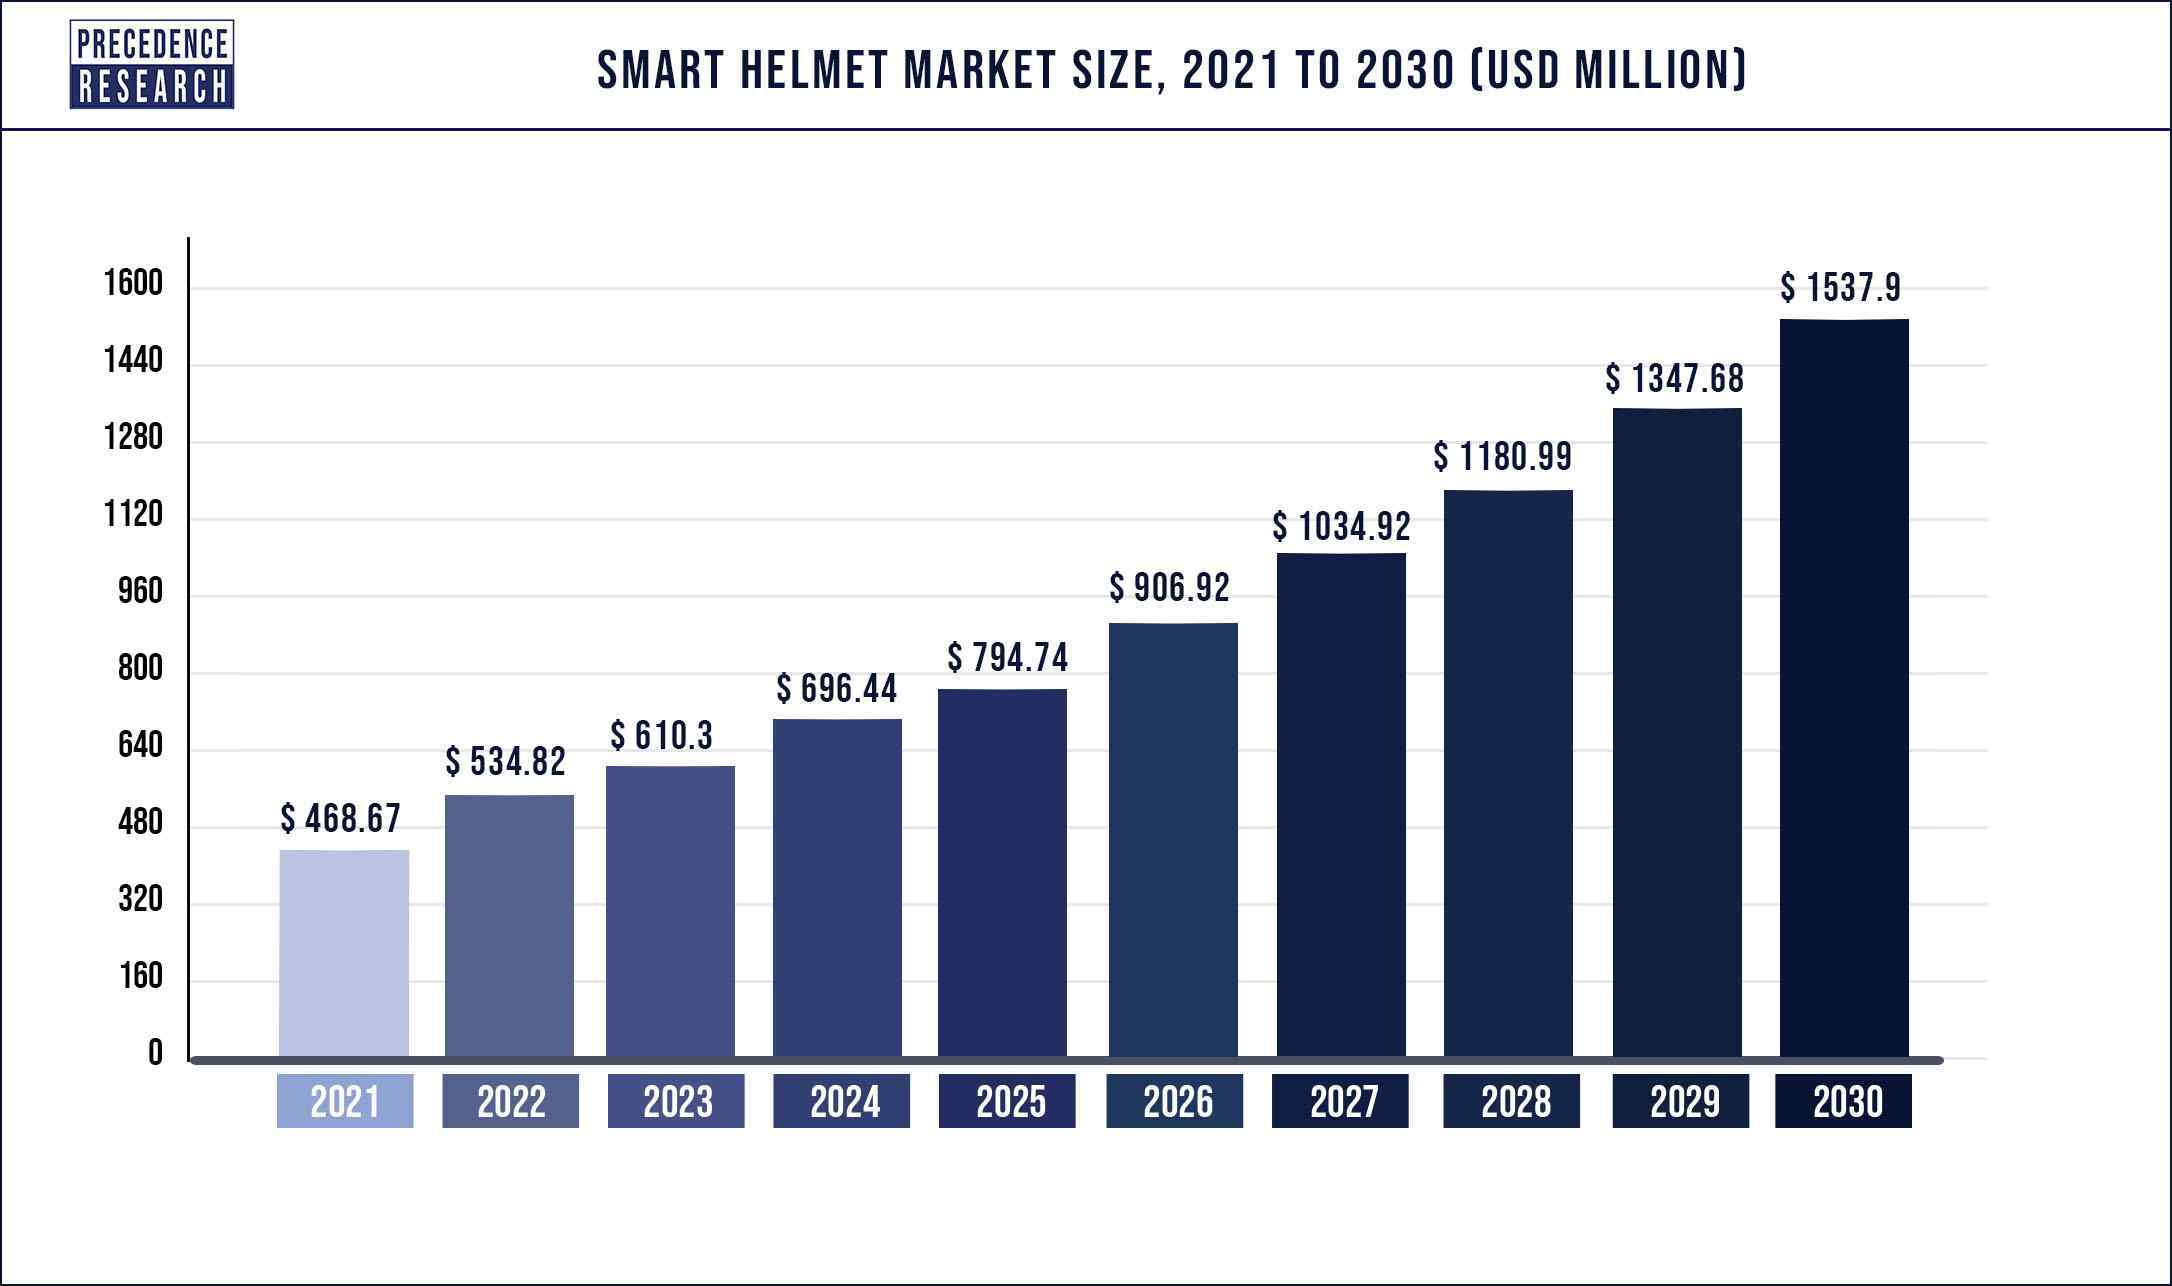 Smart Helmet Market Size 2021 to 2030